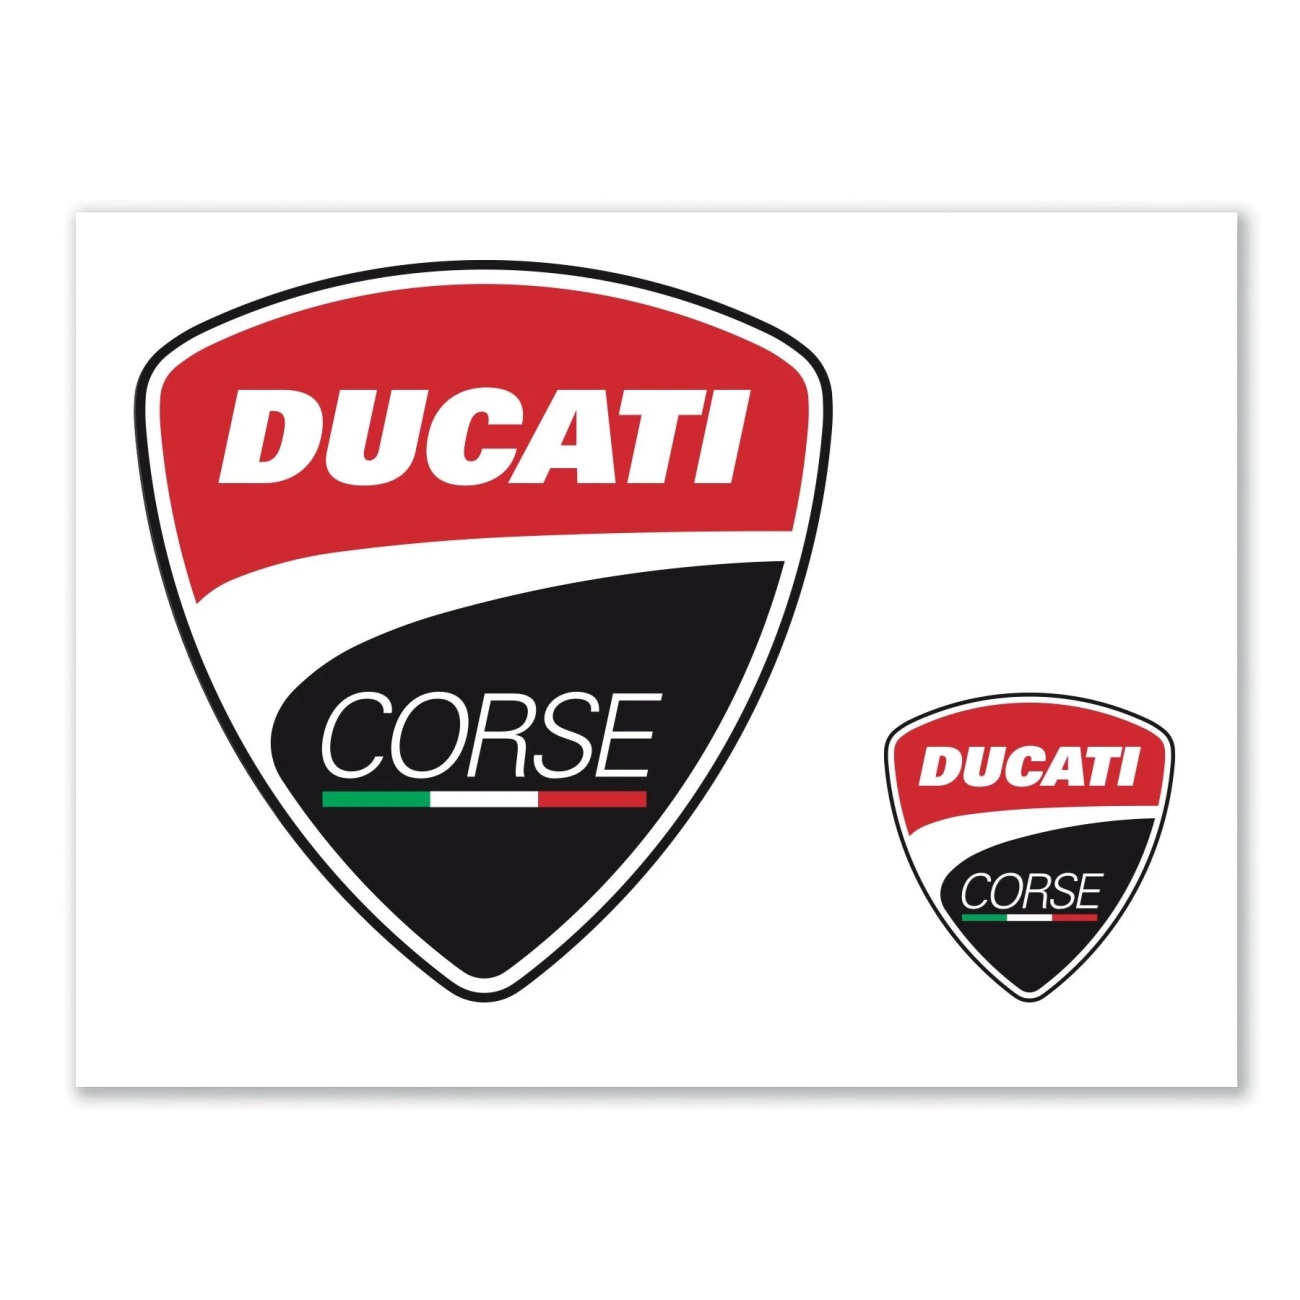 Sticker Ducati Corse Logos